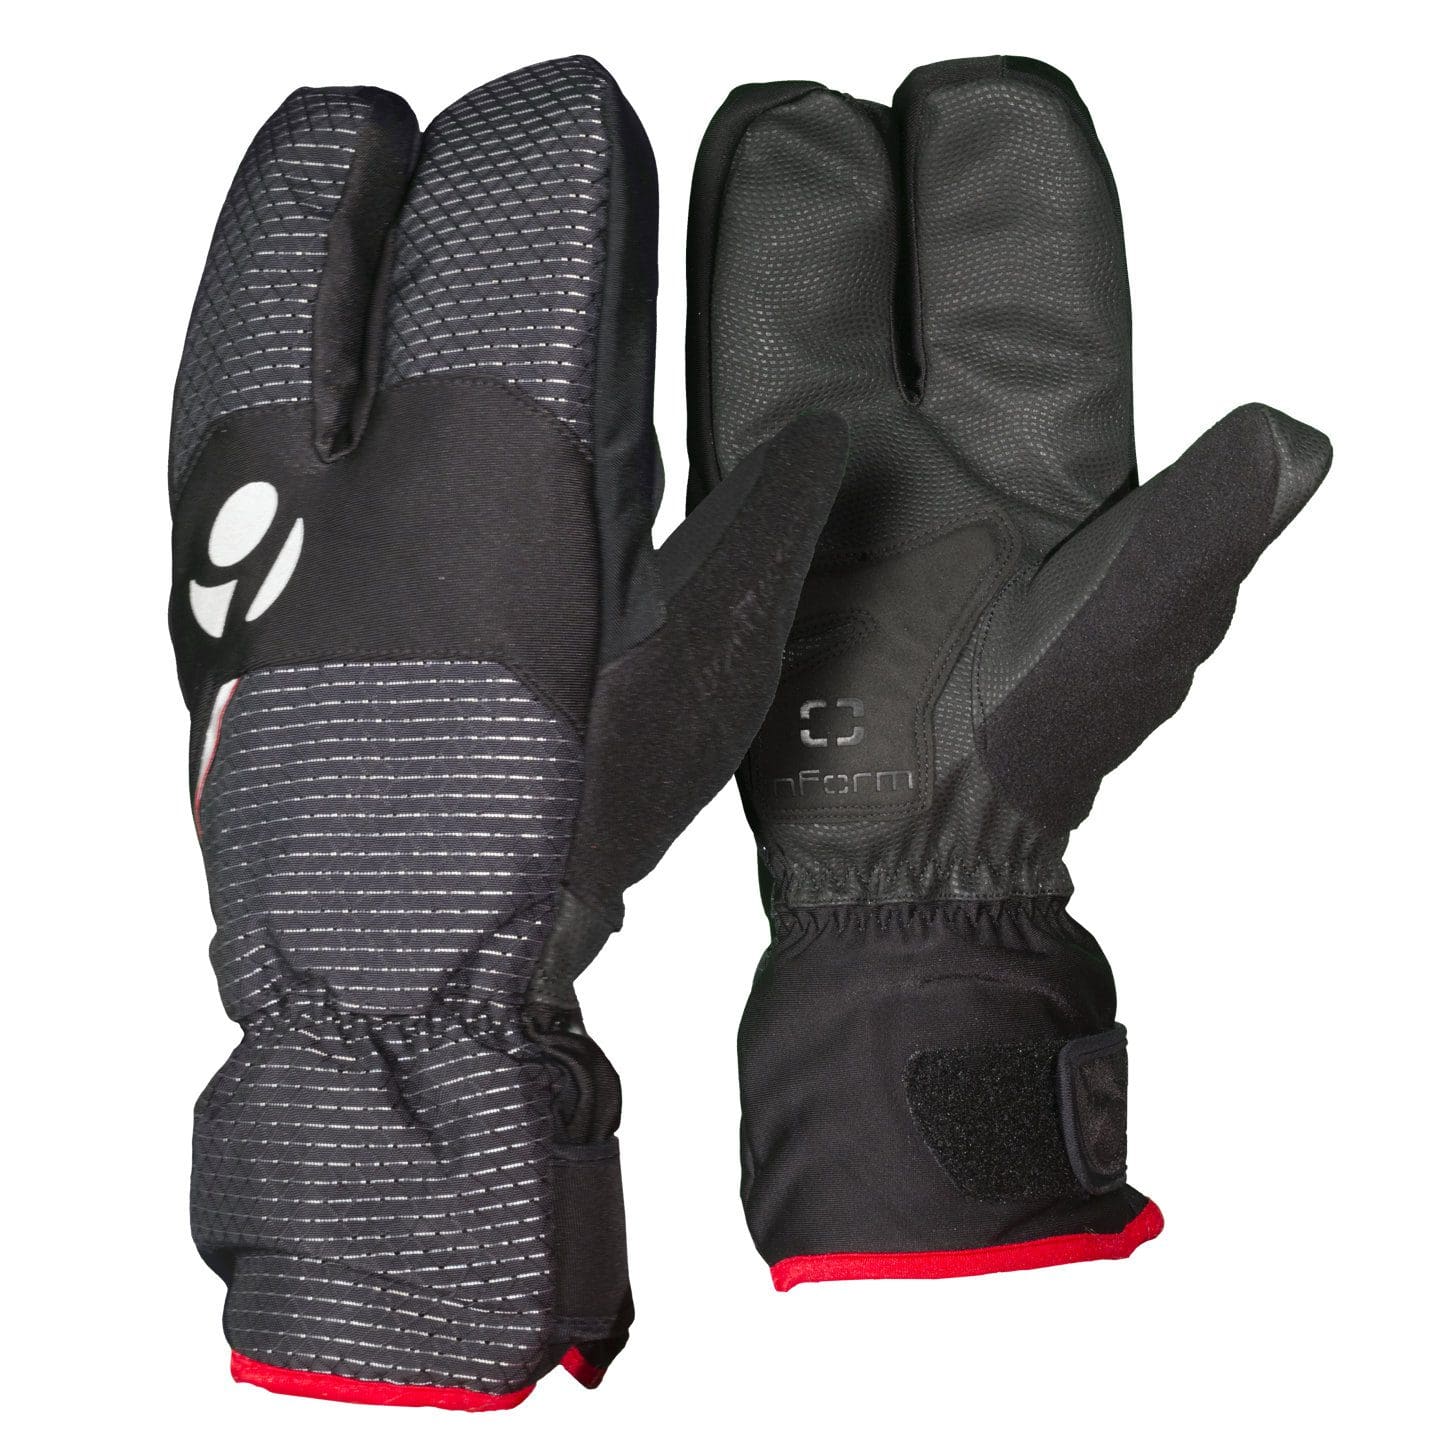 bontrager winter gloves